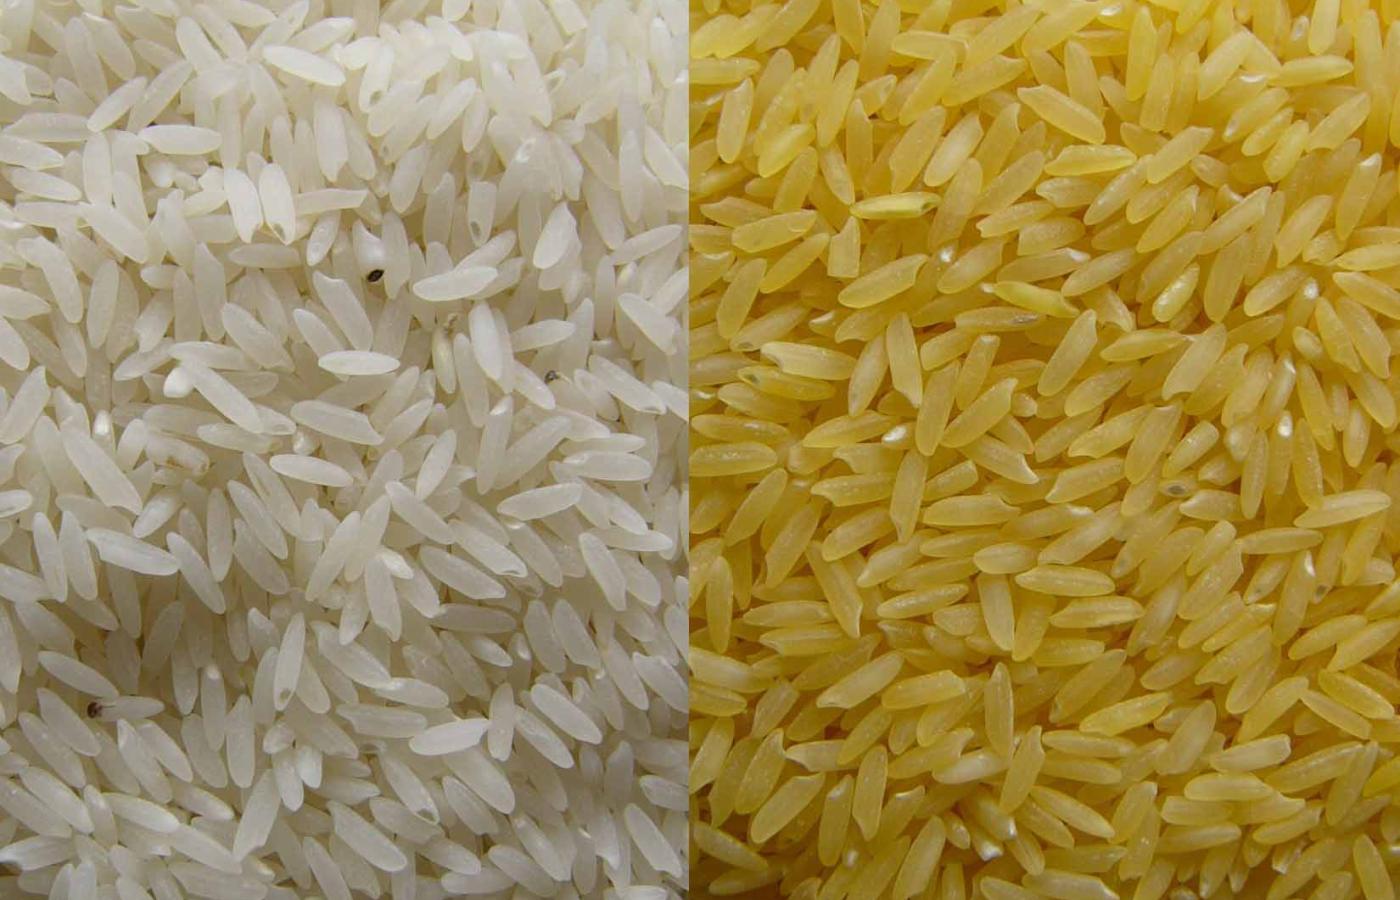 Ryż zwykły i złocisty, zmodyfikowany genetycznie.